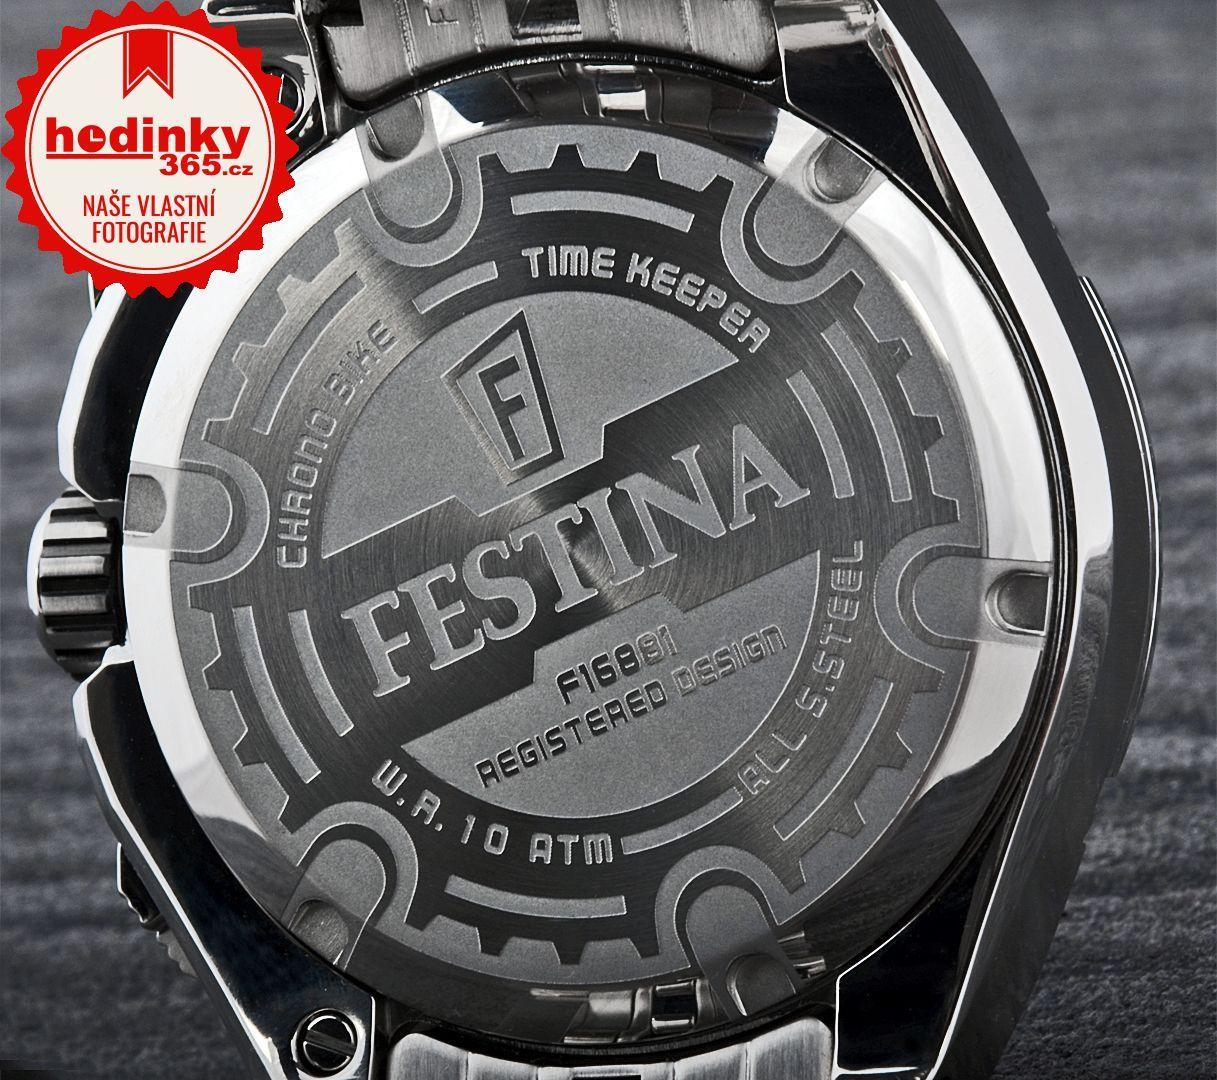 Festina Logo - Festina: Festina Tour De France 2015